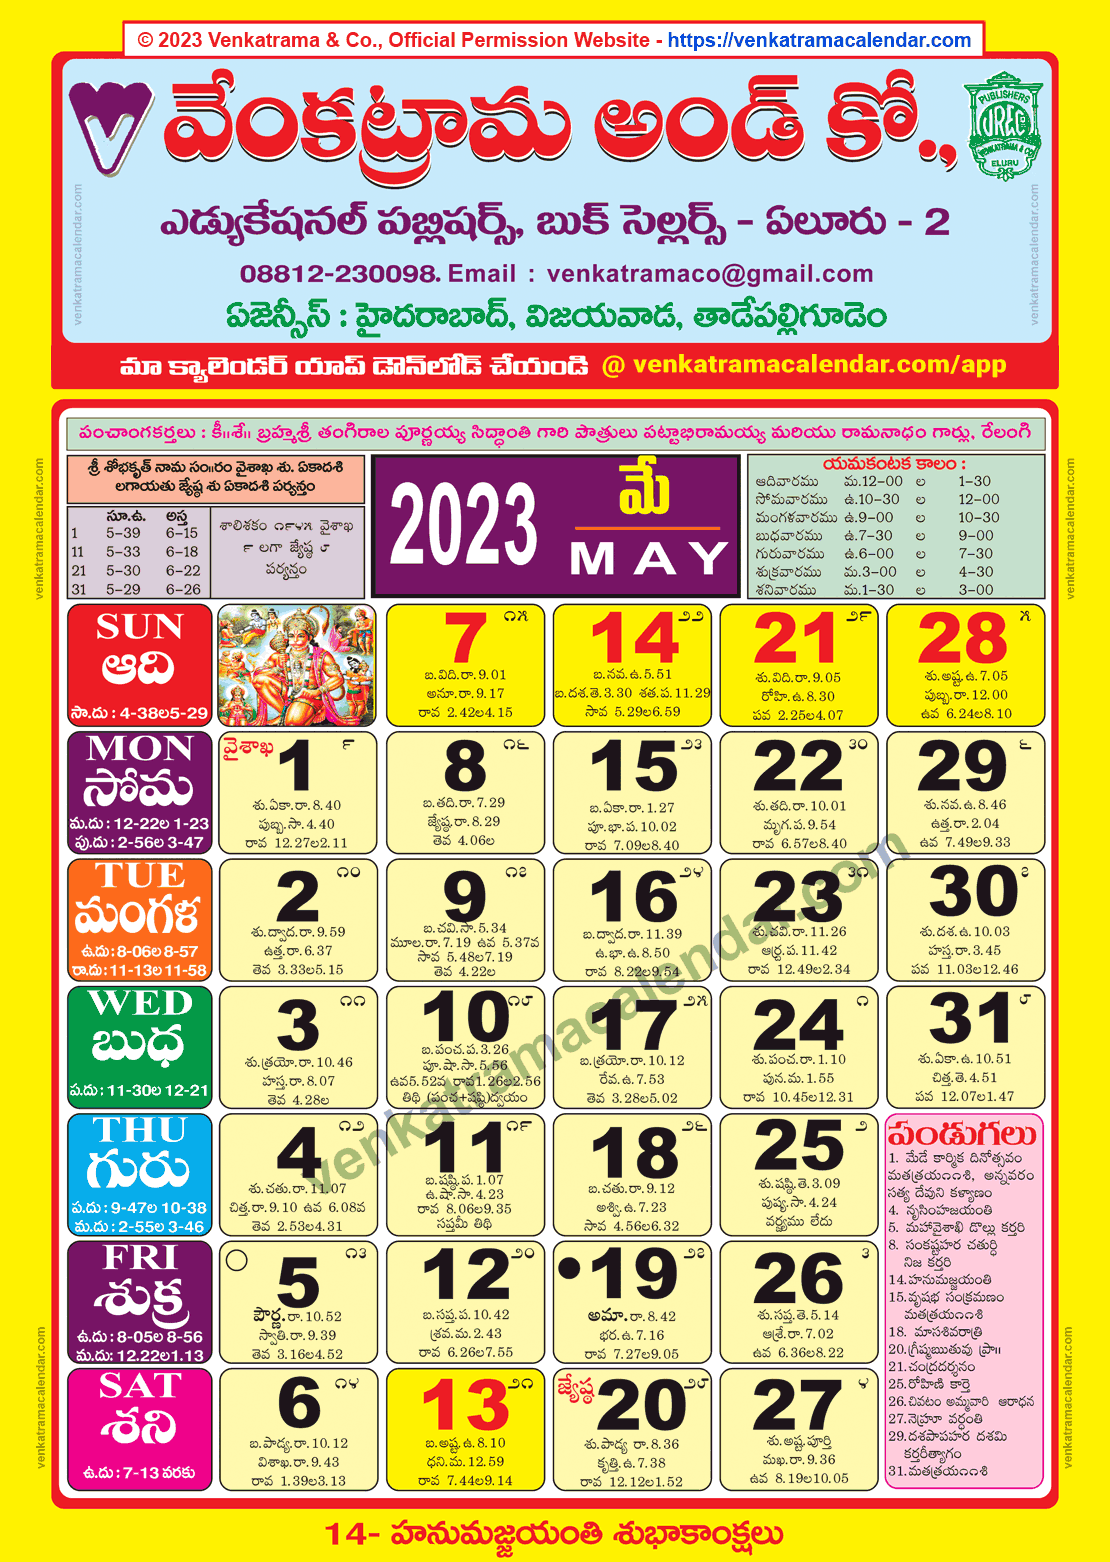 Venkatrama Calendar 2023 May